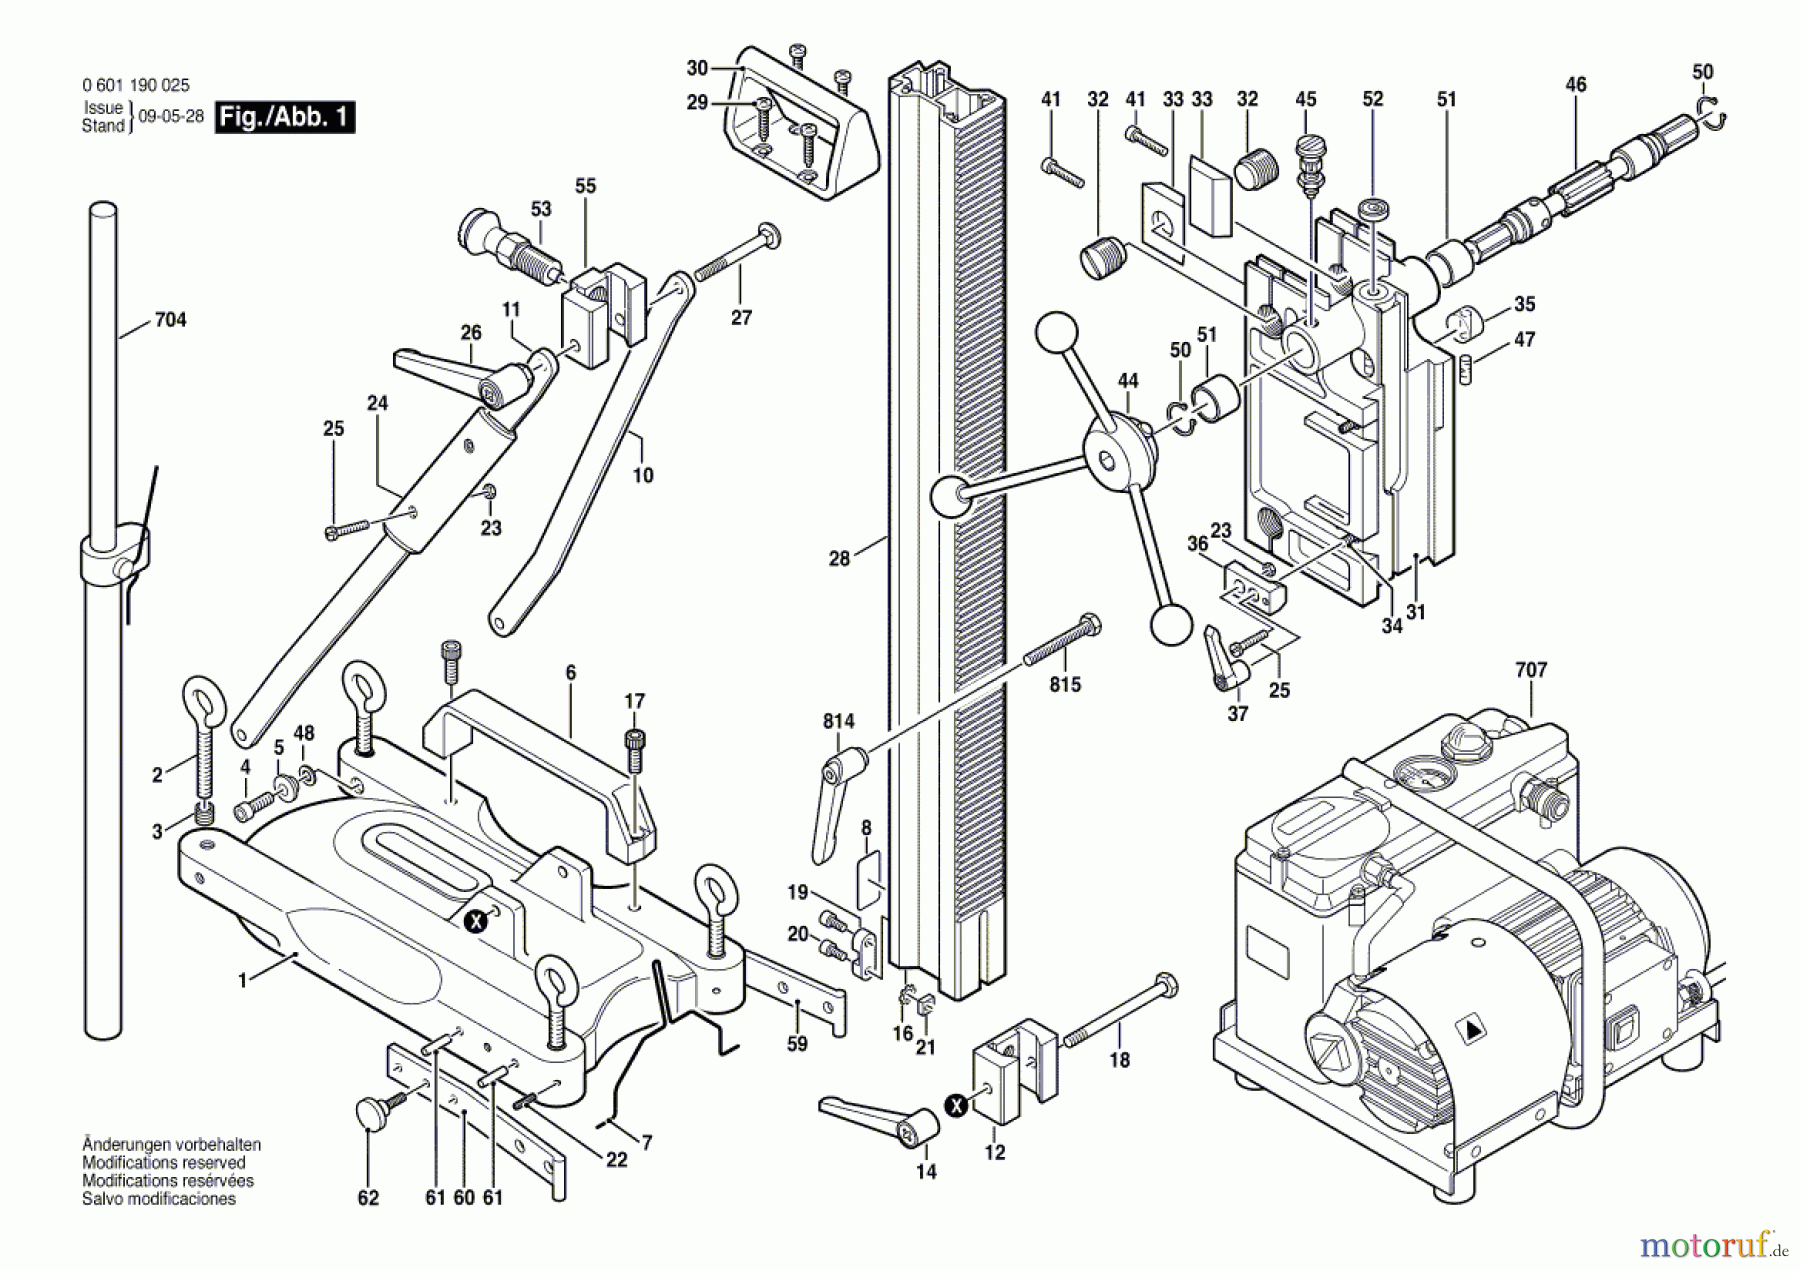  Bosch Werkzeug Bohrständer S 500 A Seite 1